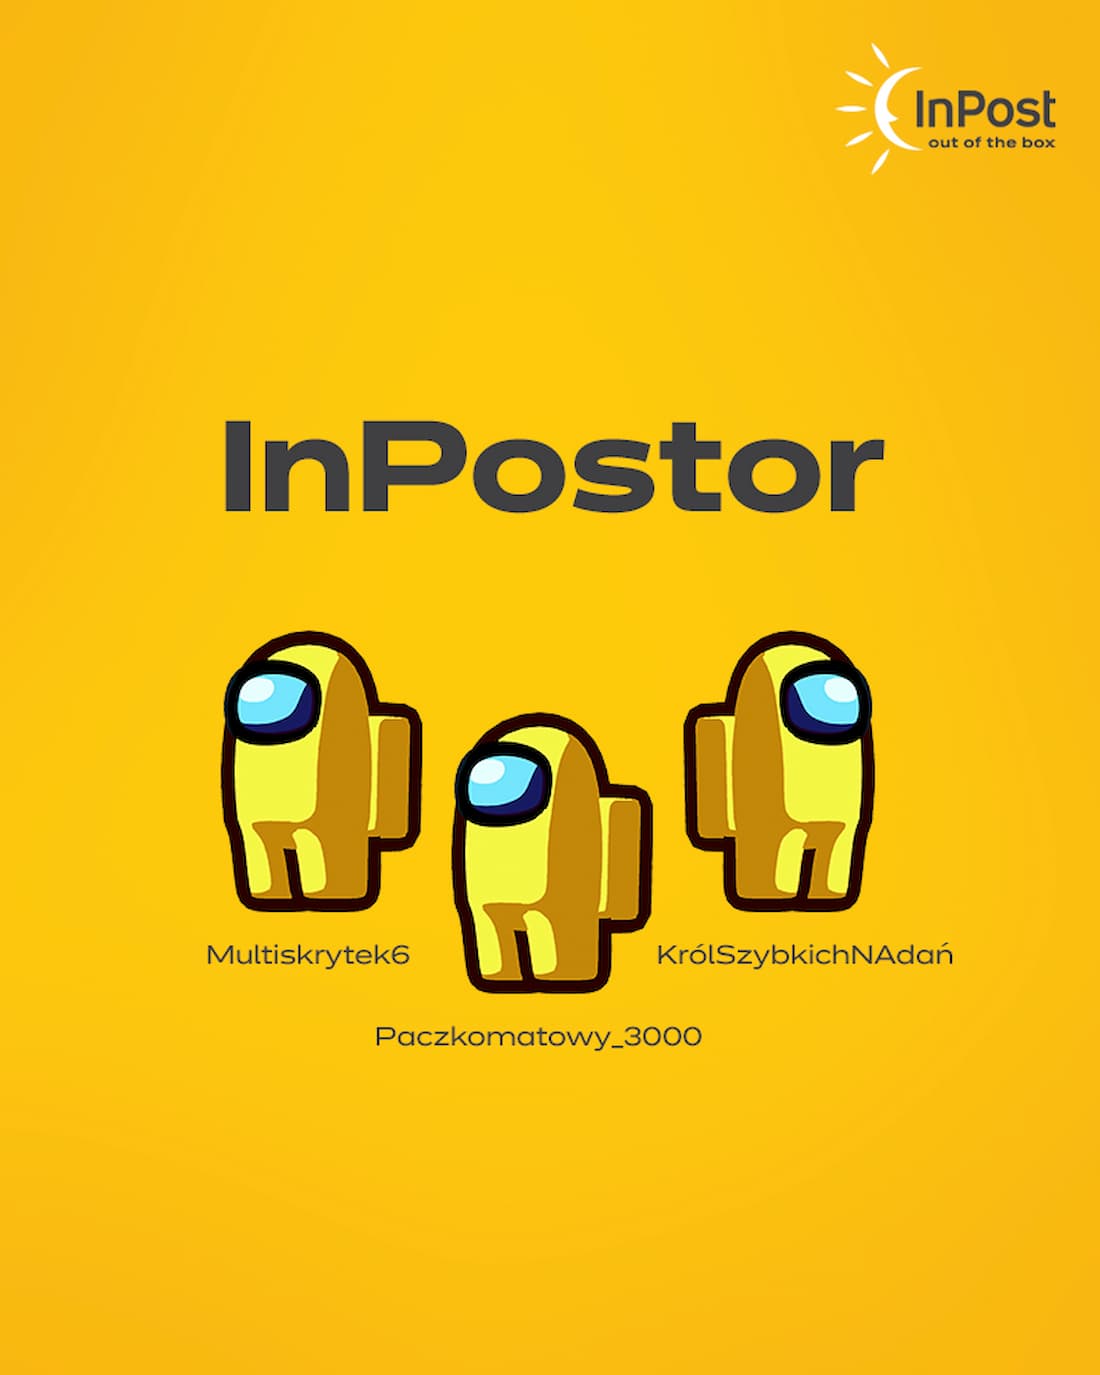 InPost - Inpostor